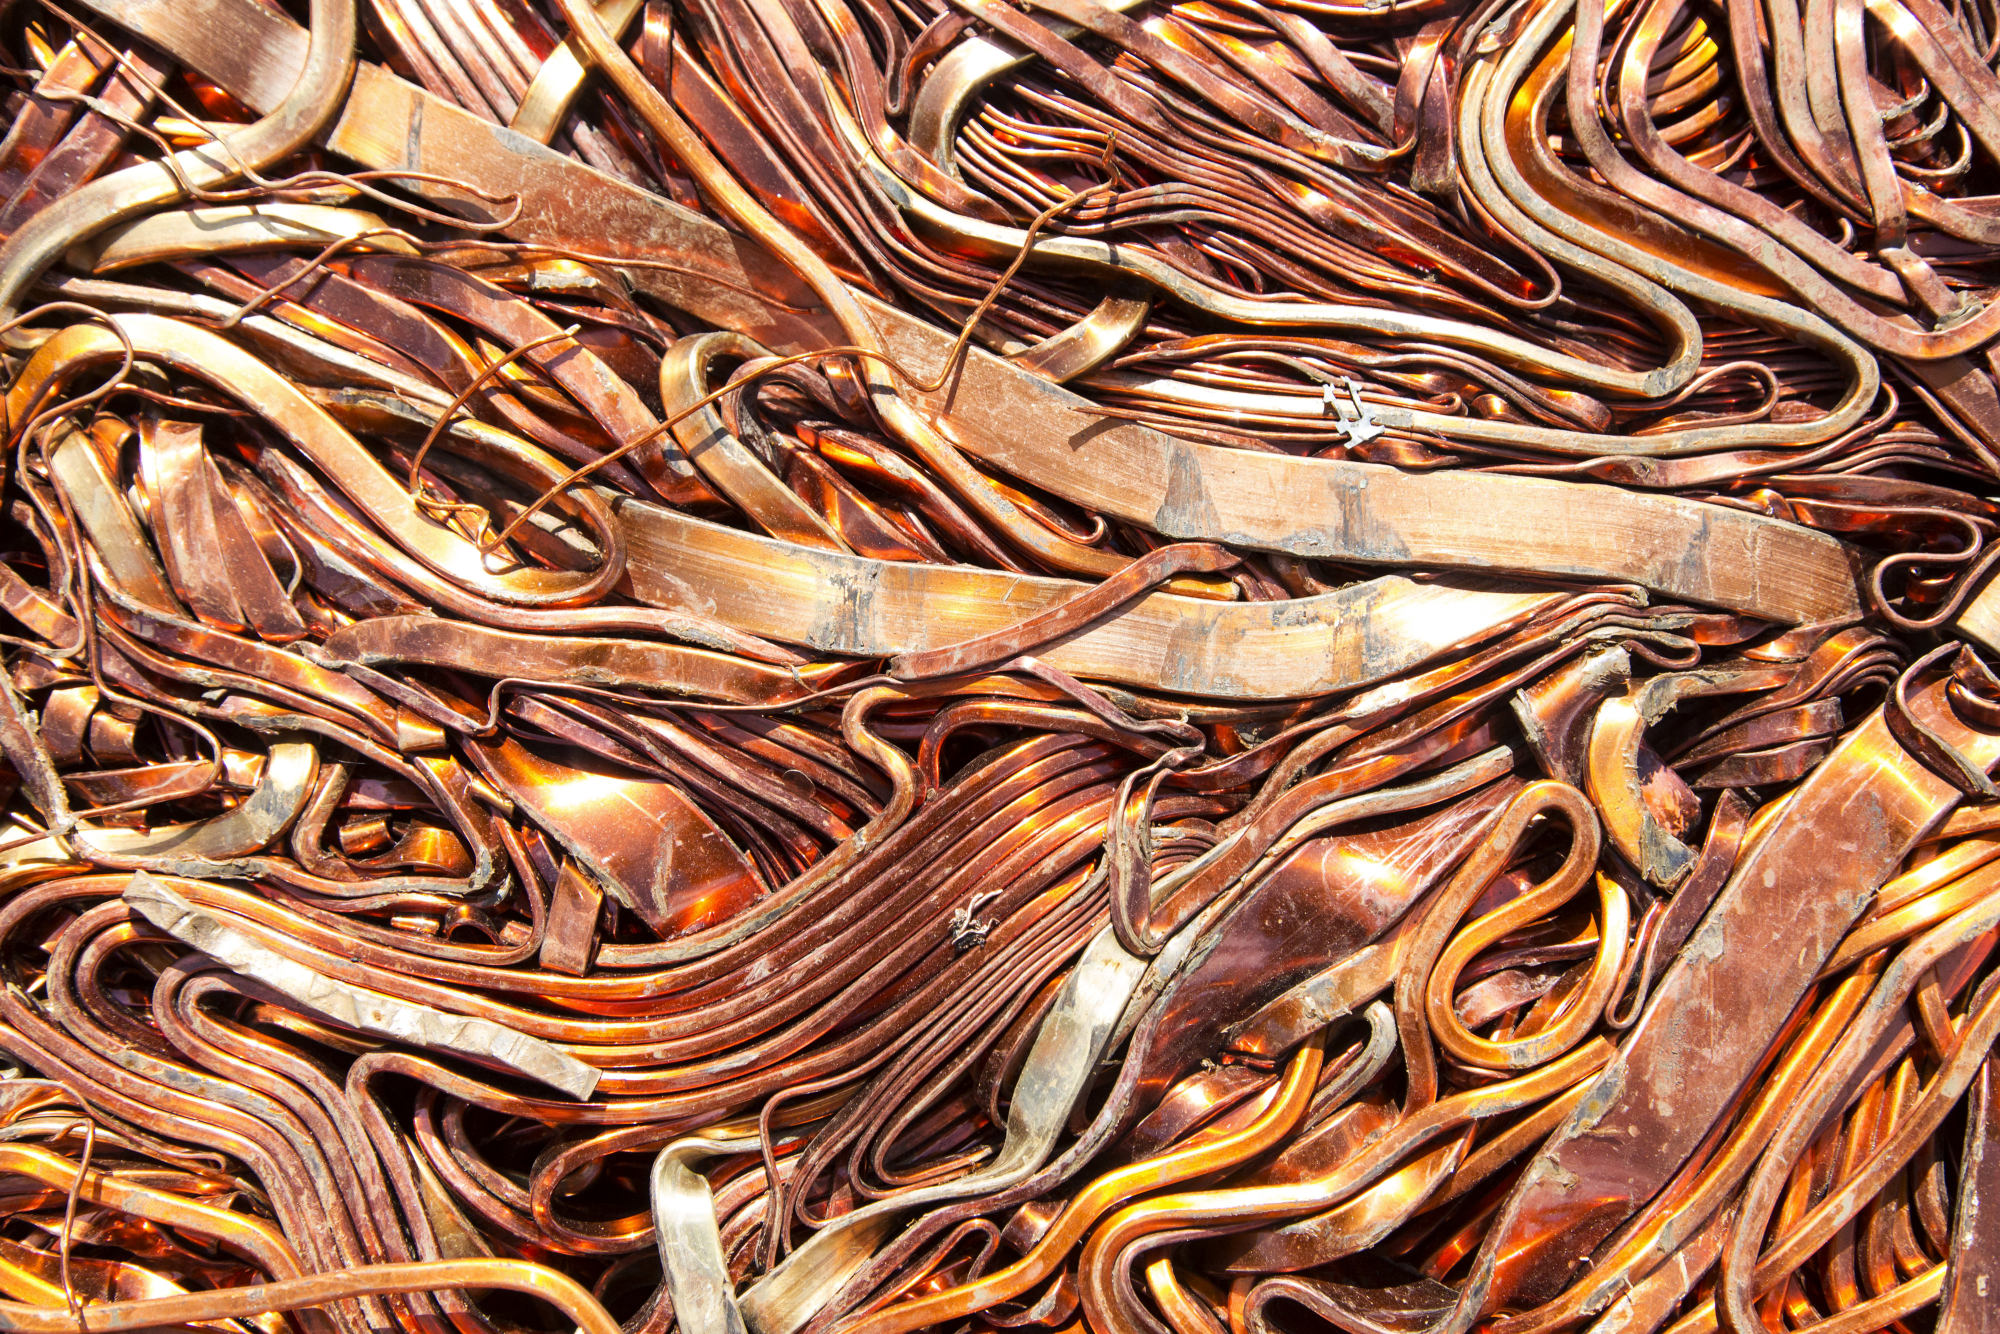 Southern Copper la firma peruana que apunta al podio de producción de cobre en 2026